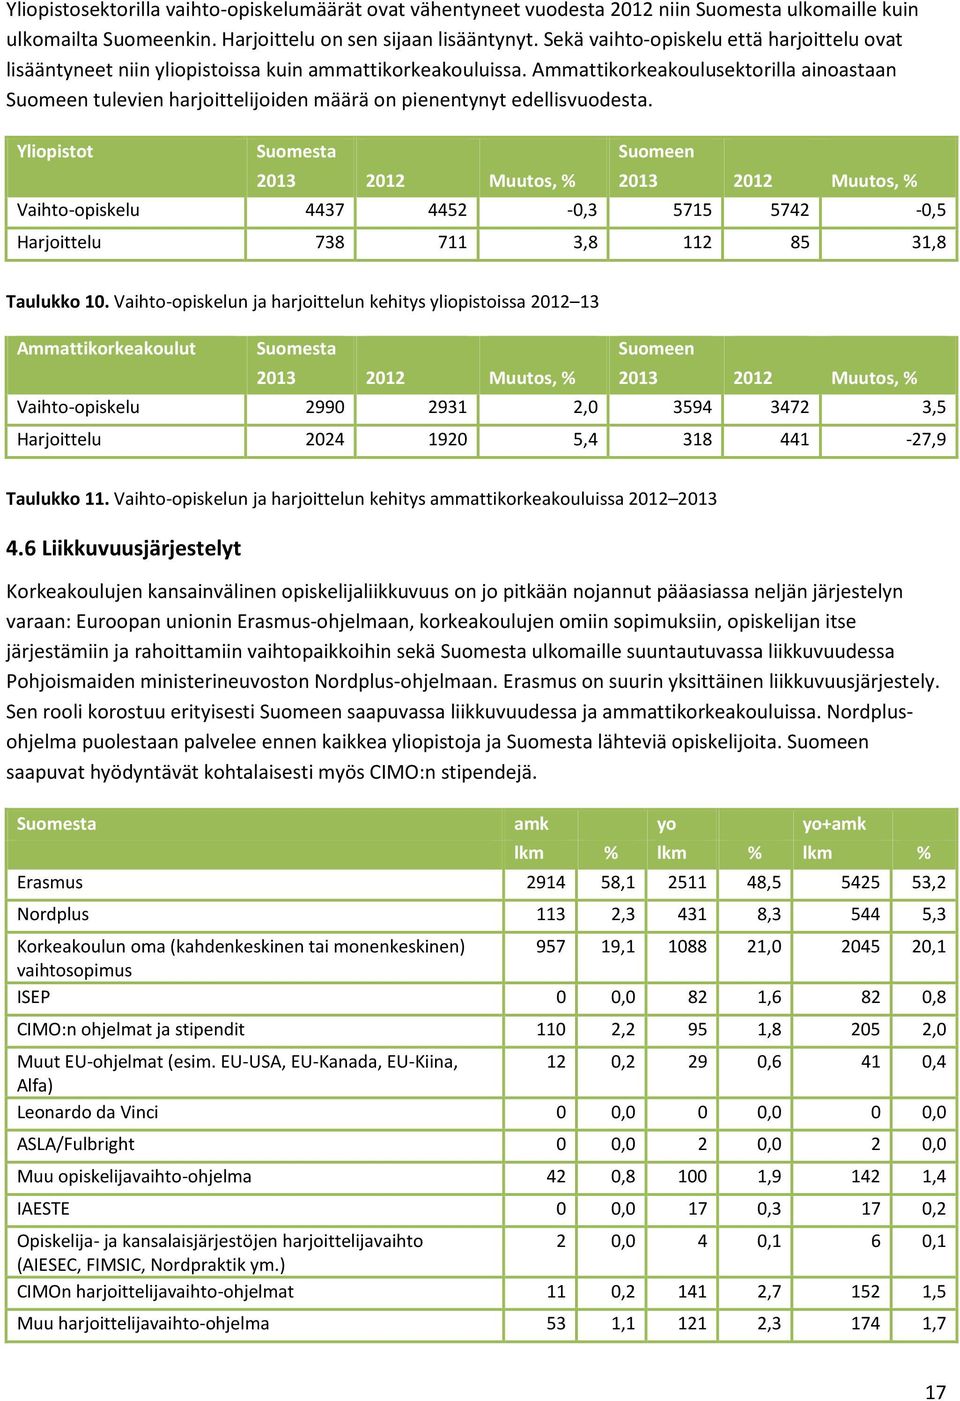 Ammattikorkeakoulusektorilla ainoastaan Suomeen tulevien harjoittelijoiden määrä on pienentynyt edellisvuodesta.